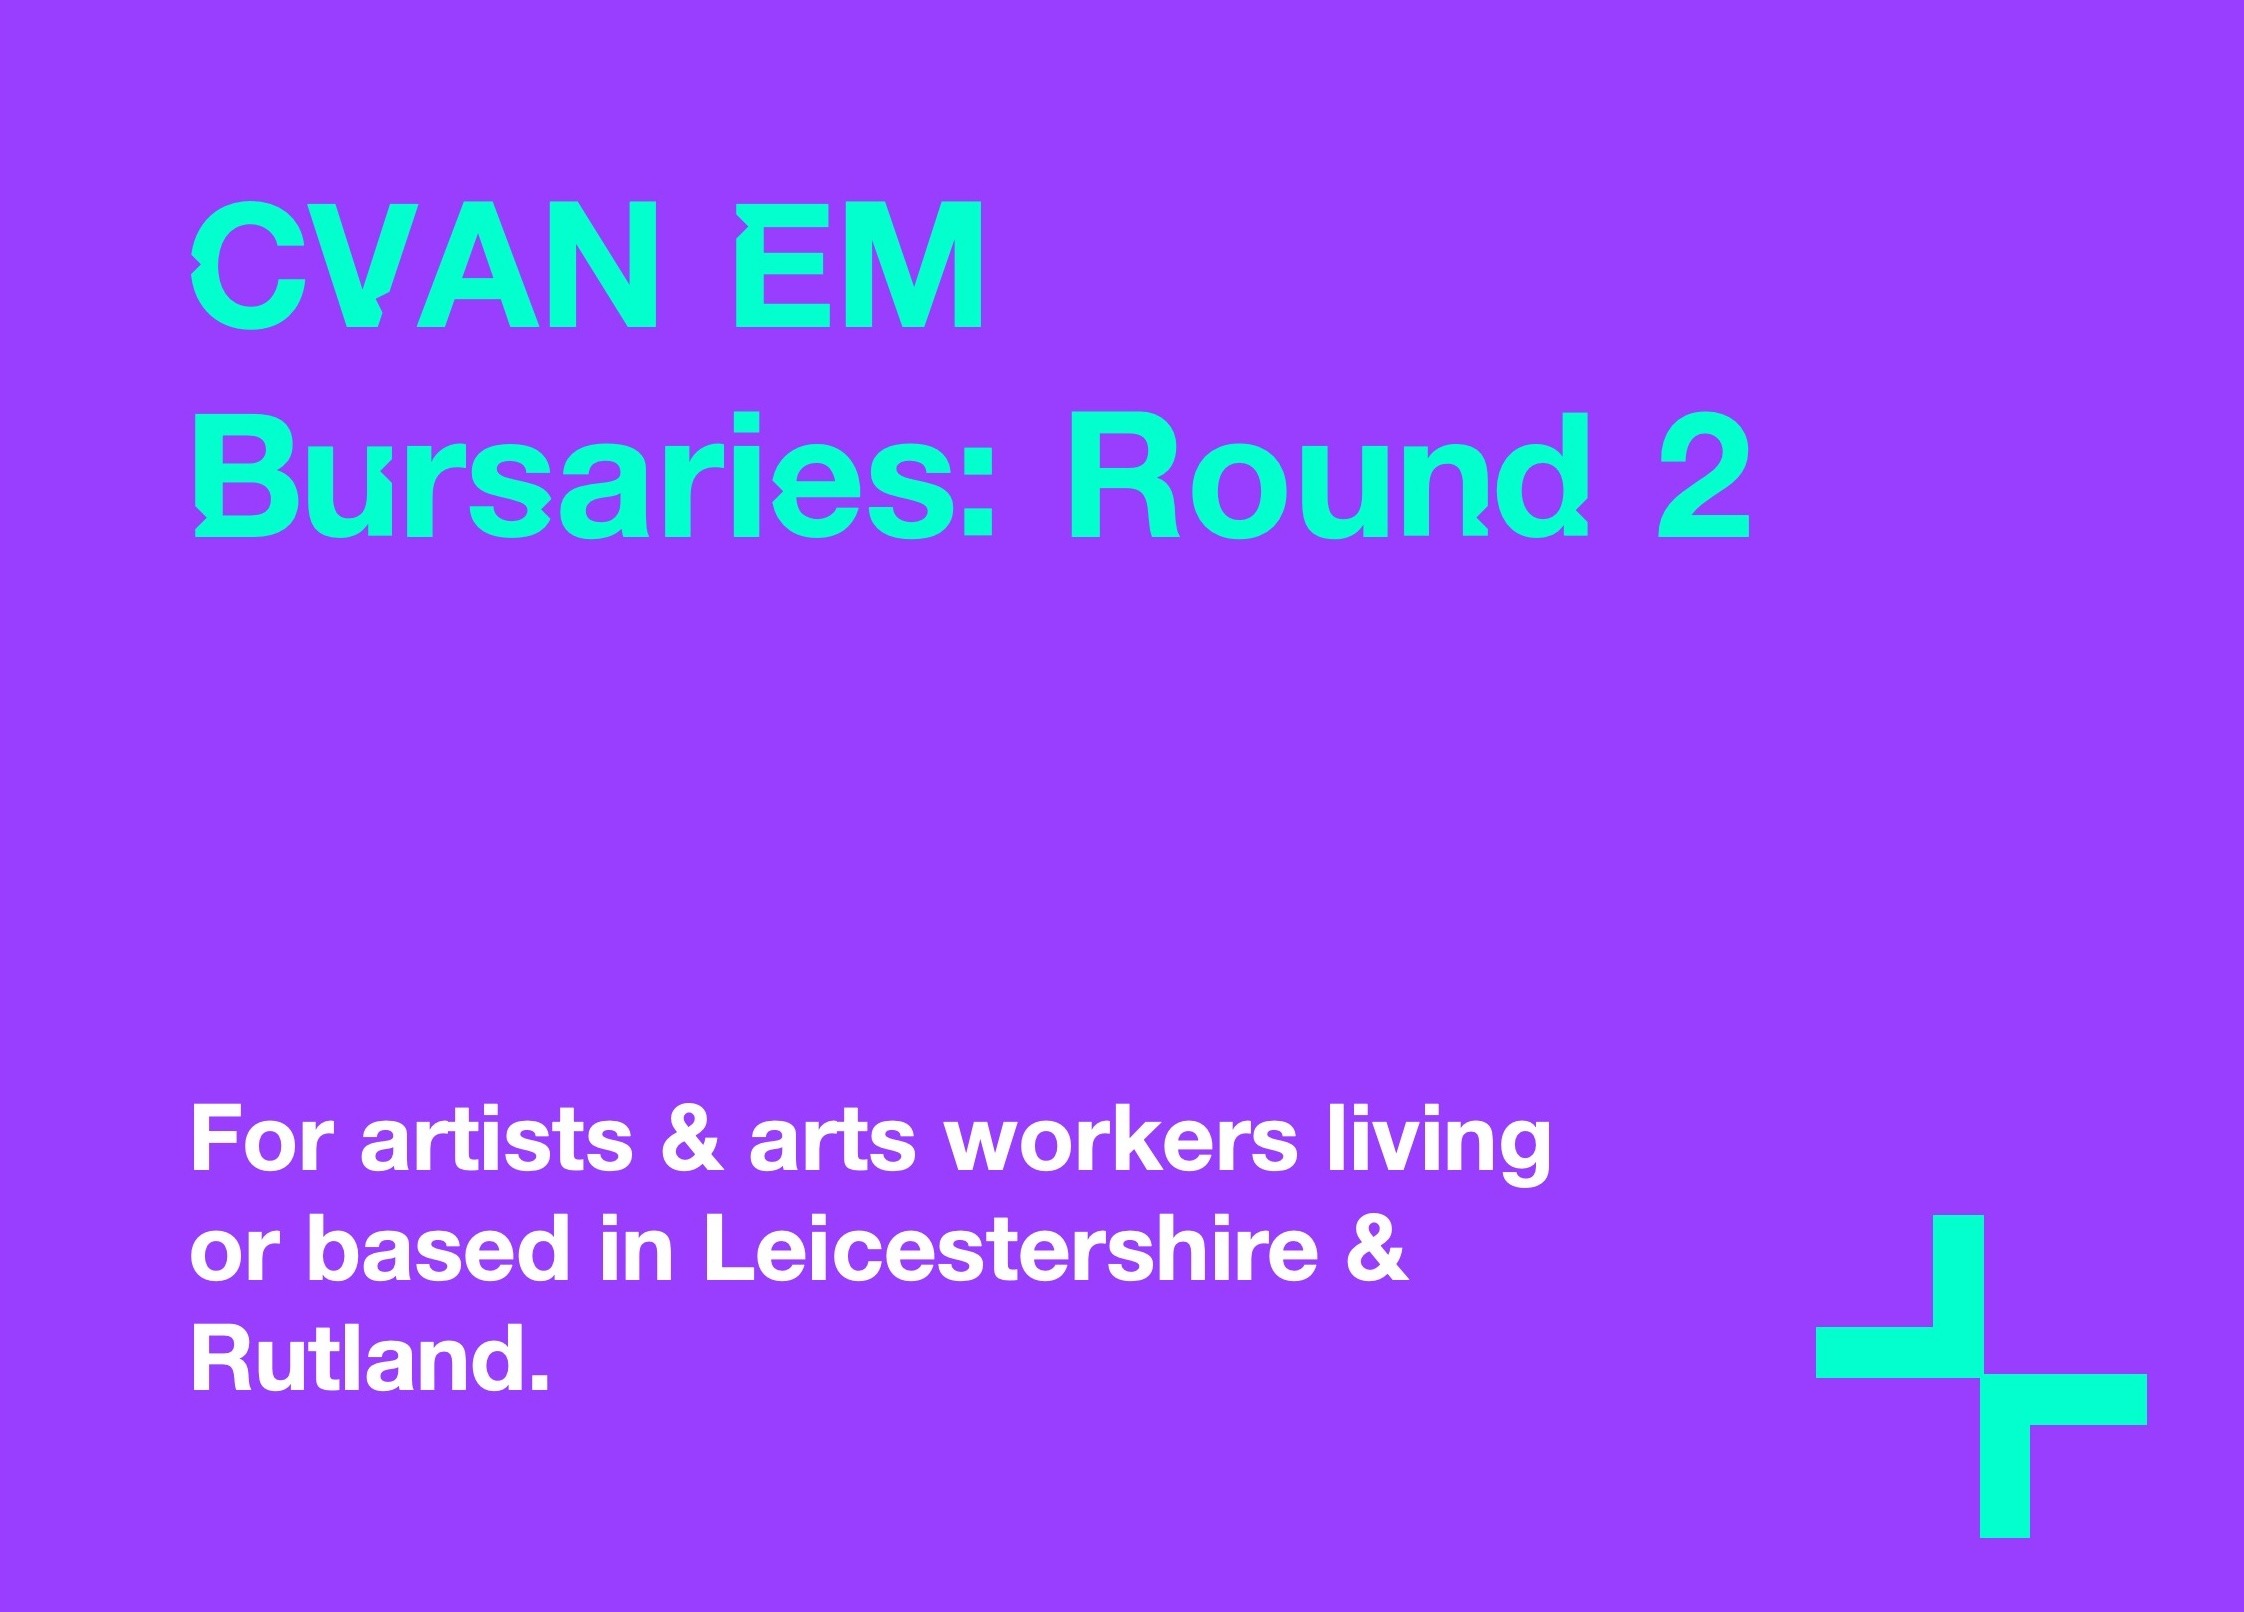 CVAN EM Bursaries: Round 2